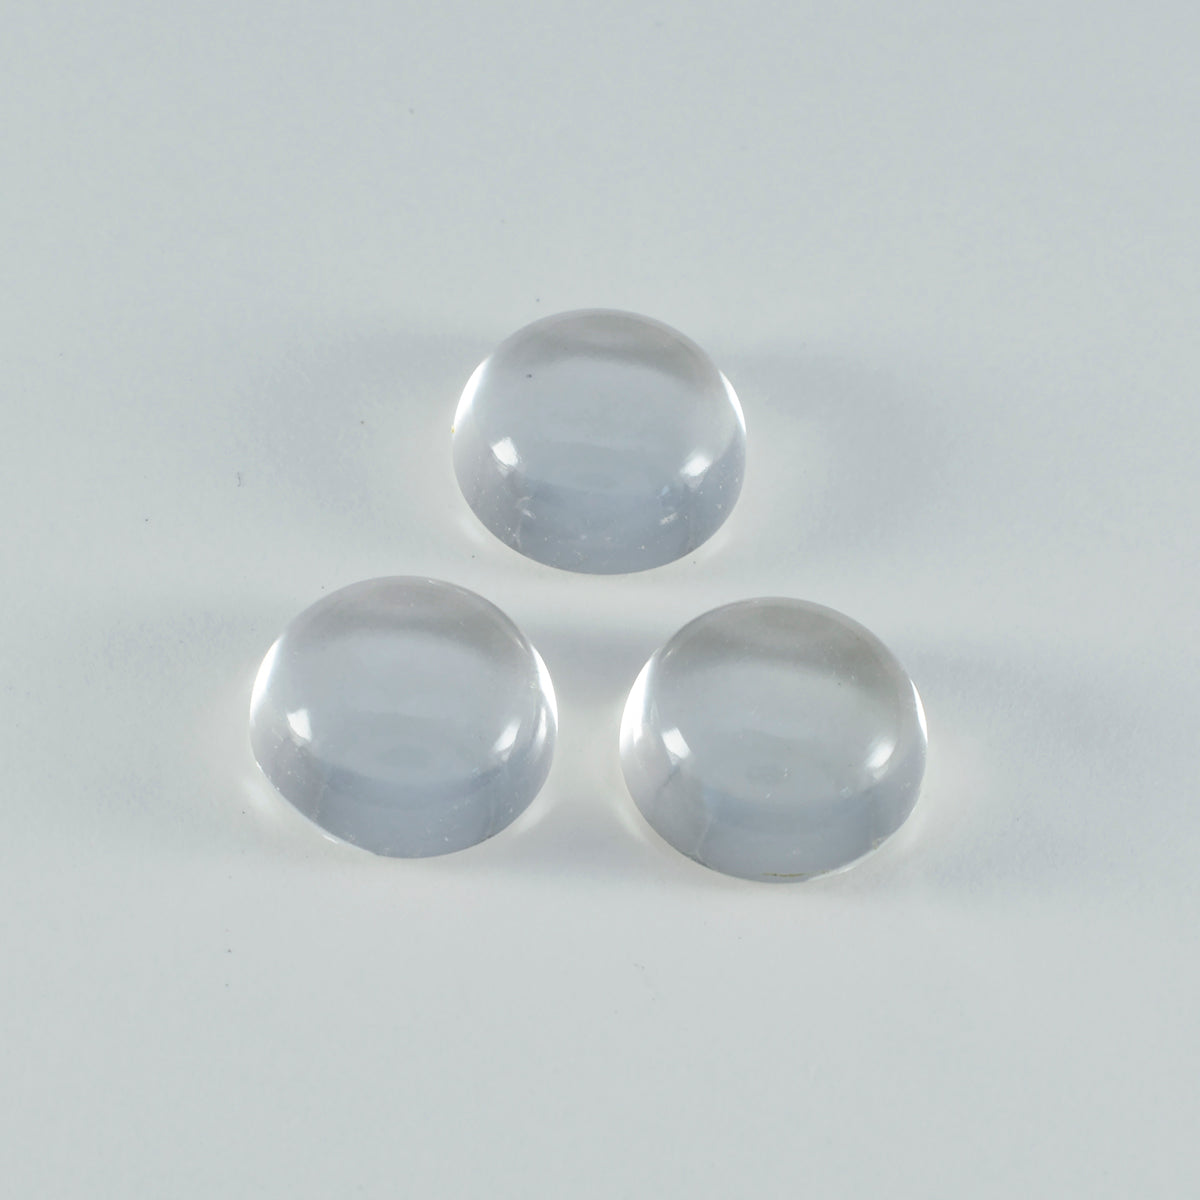 riyogems 1pc cabochon di quarzo di cristallo bianco 11x11 mm forma rotonda gemma sciolta di bella qualità